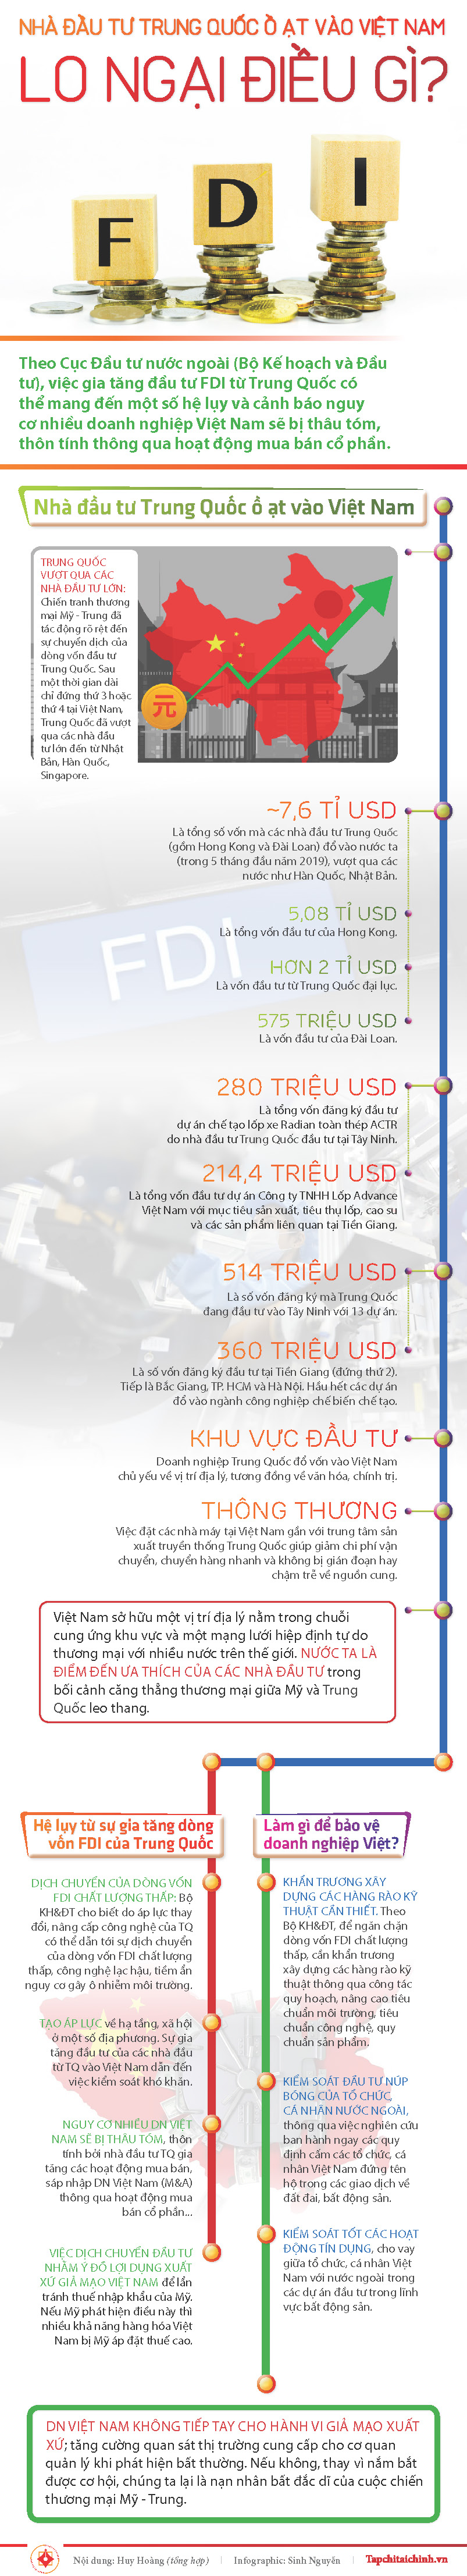 [Infographics] Nhà đầu tư Trung Quốc ồ ạt vào Việt Nam: Lo ngại điều gì? - Ảnh 1